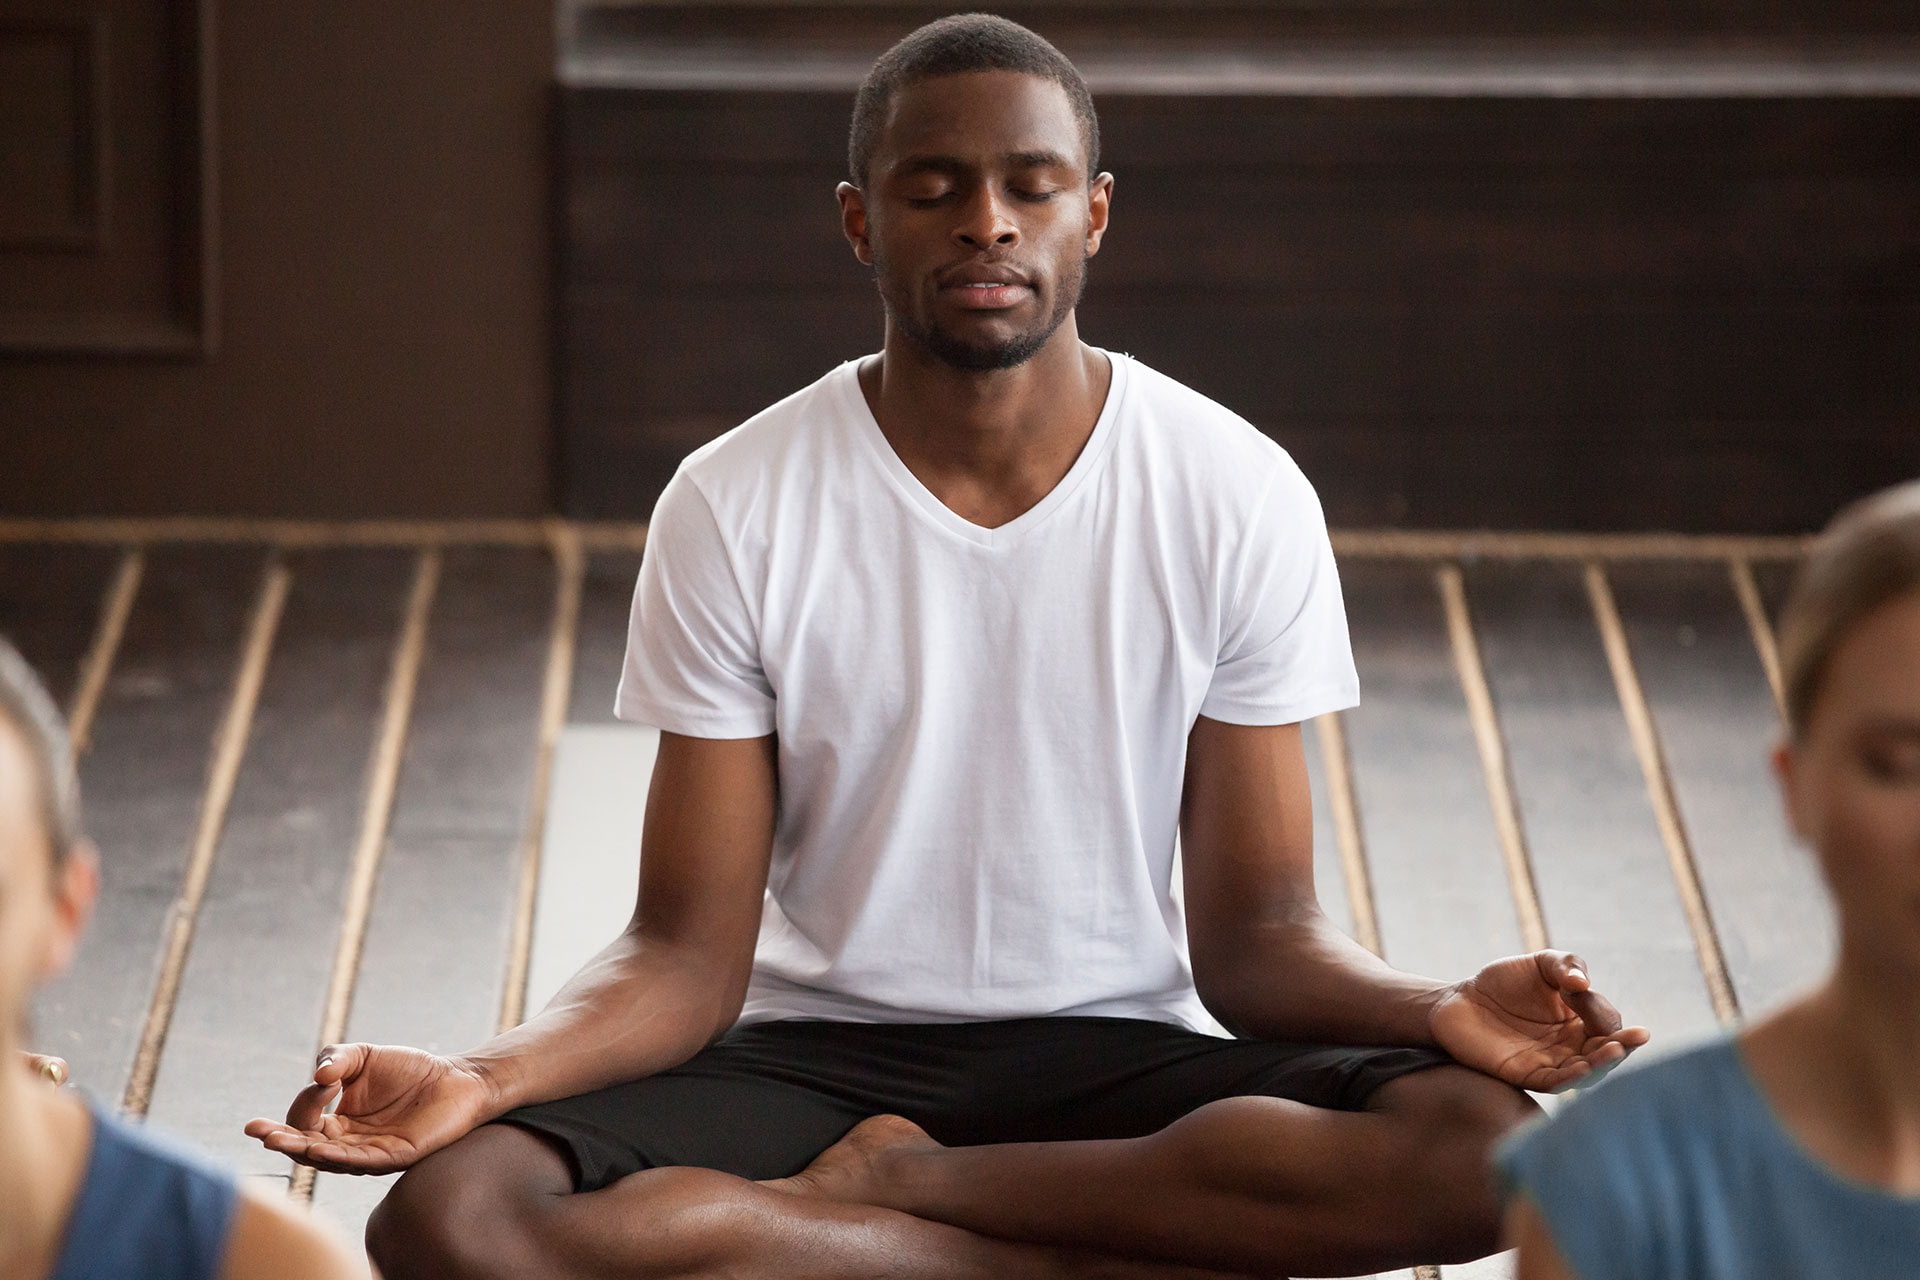 man practicing meditation using a meditation app